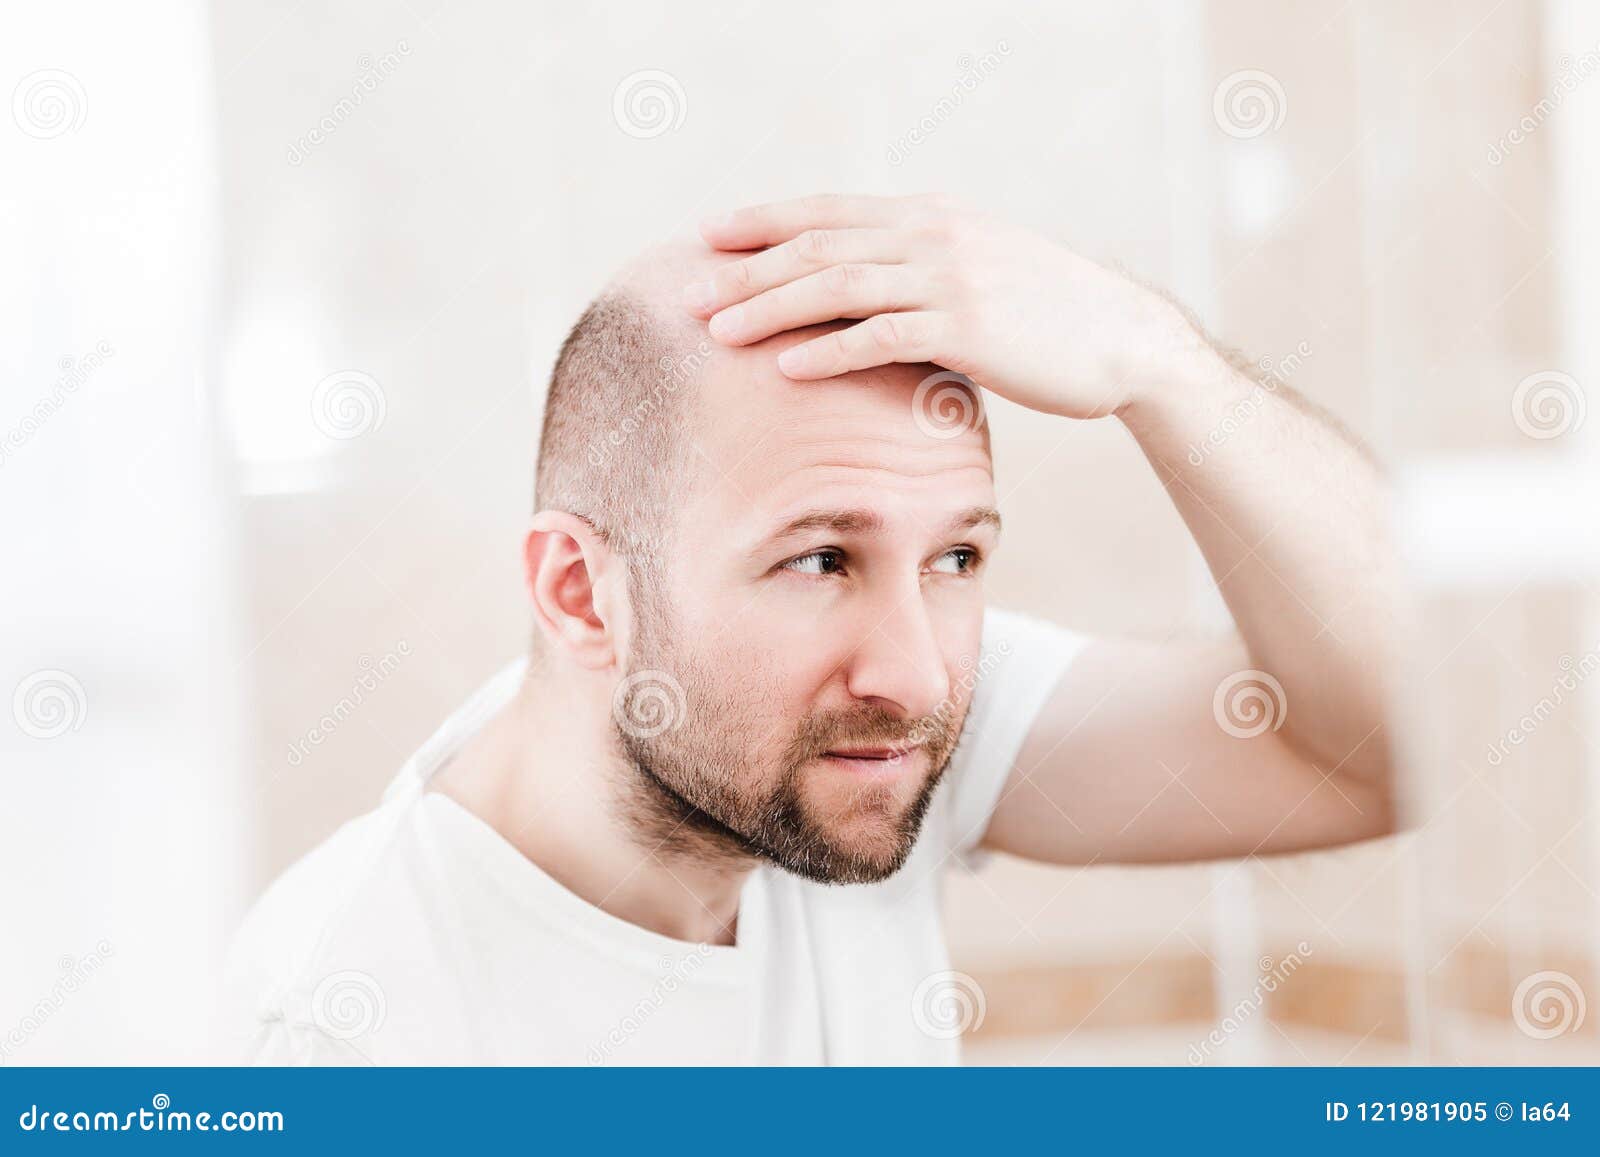 bald man looking mirror at head baldness and hair loss